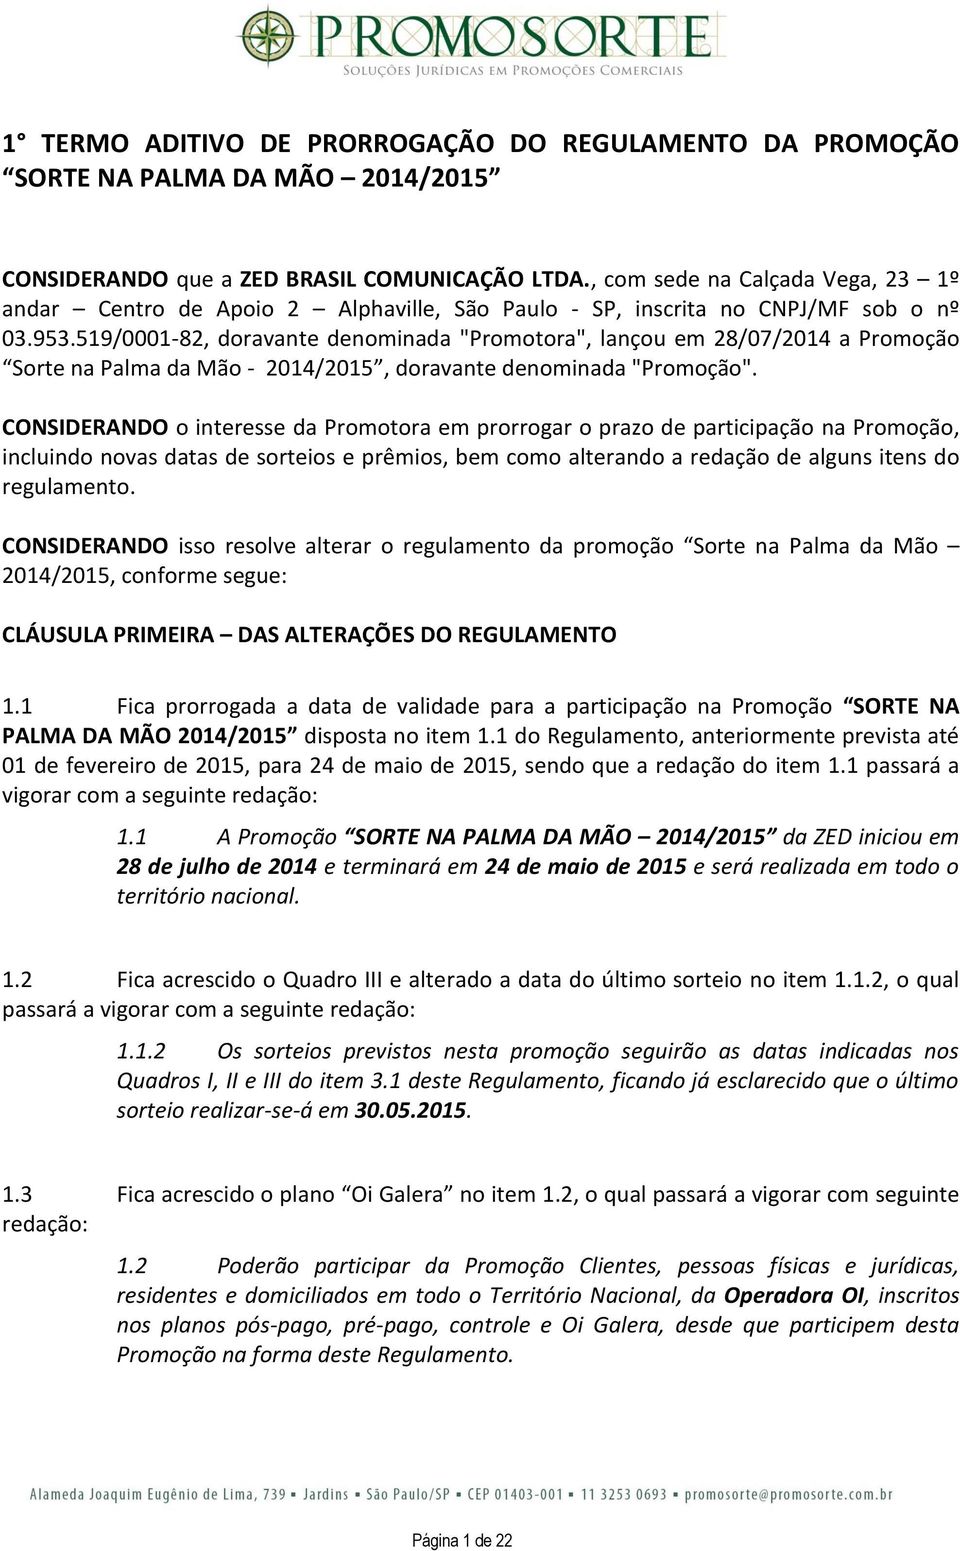 519/0001-82, doravante denominada "Promotora", lançou em 28/07/2014 a Promoção Sorte na Palma da Mão - 2014/2015, doravante denominada "Promoção".